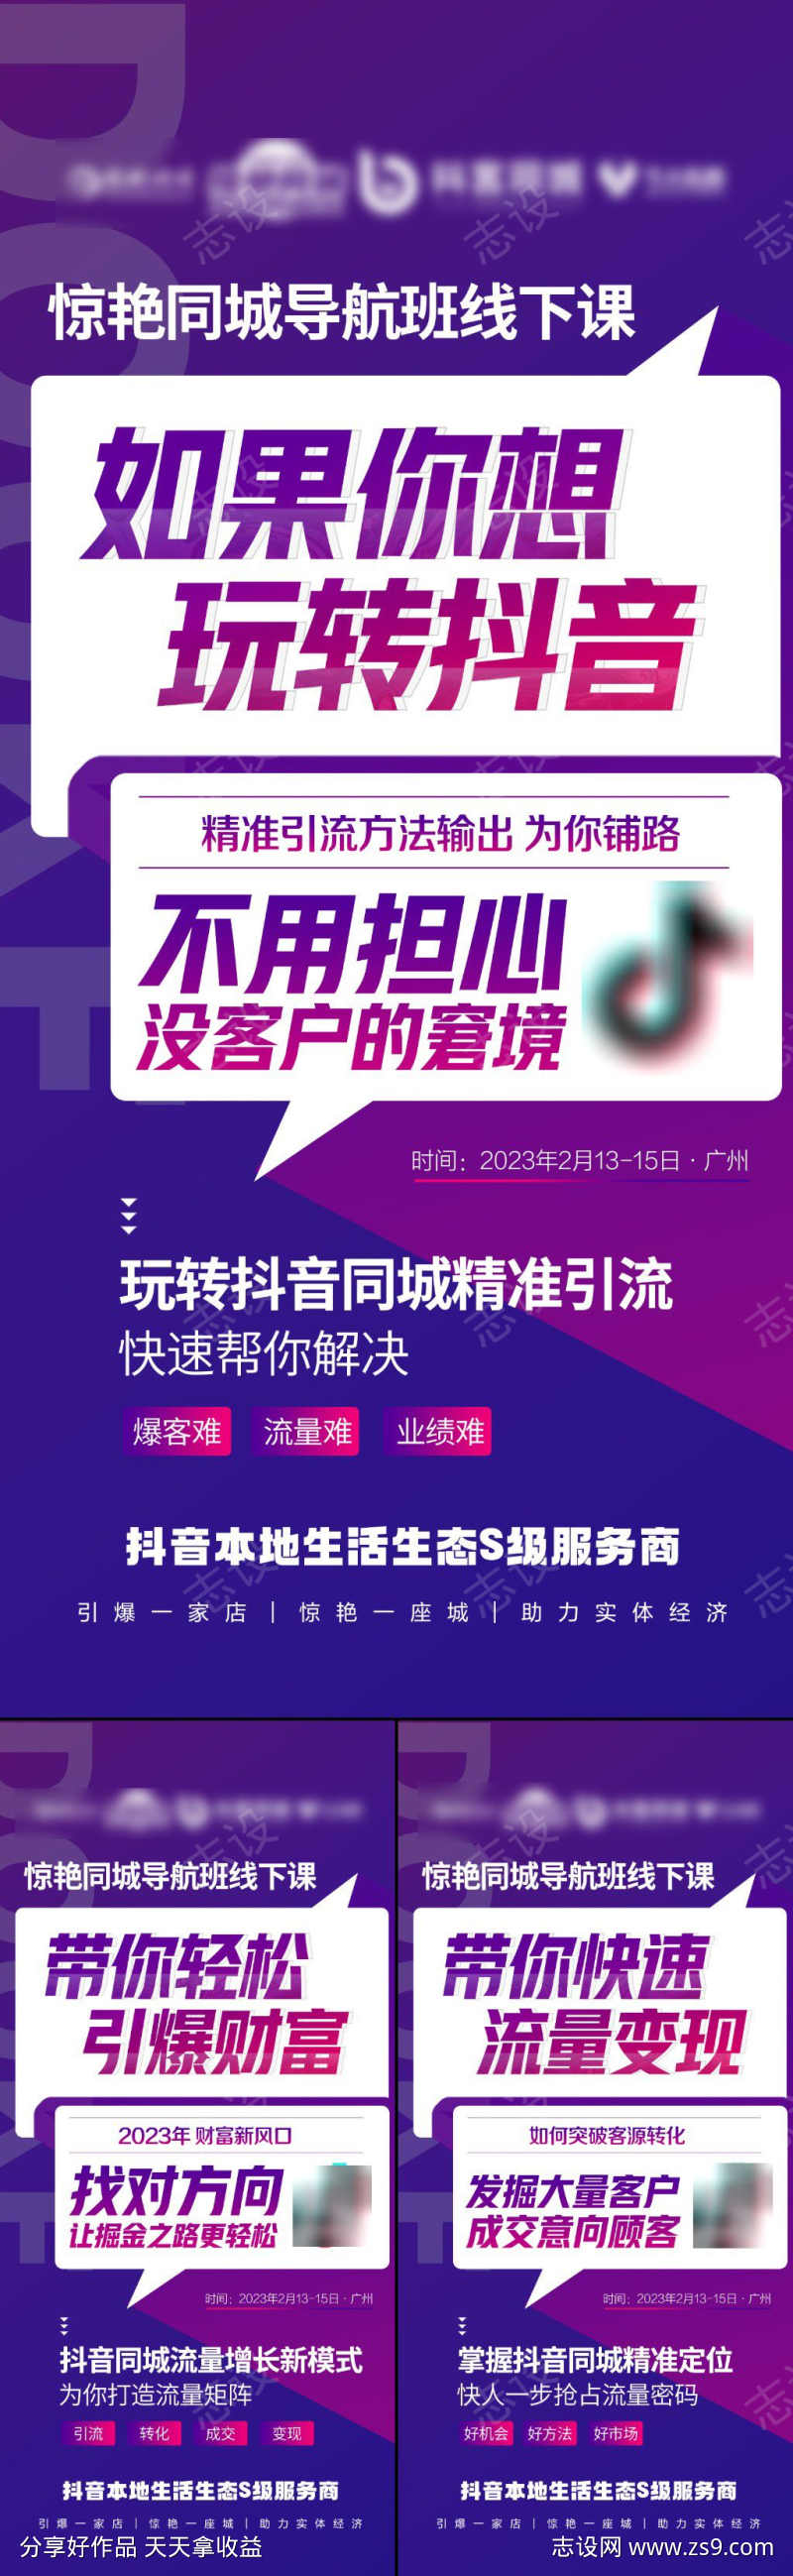 抖音风蓝紫色系列造势招商会议海报